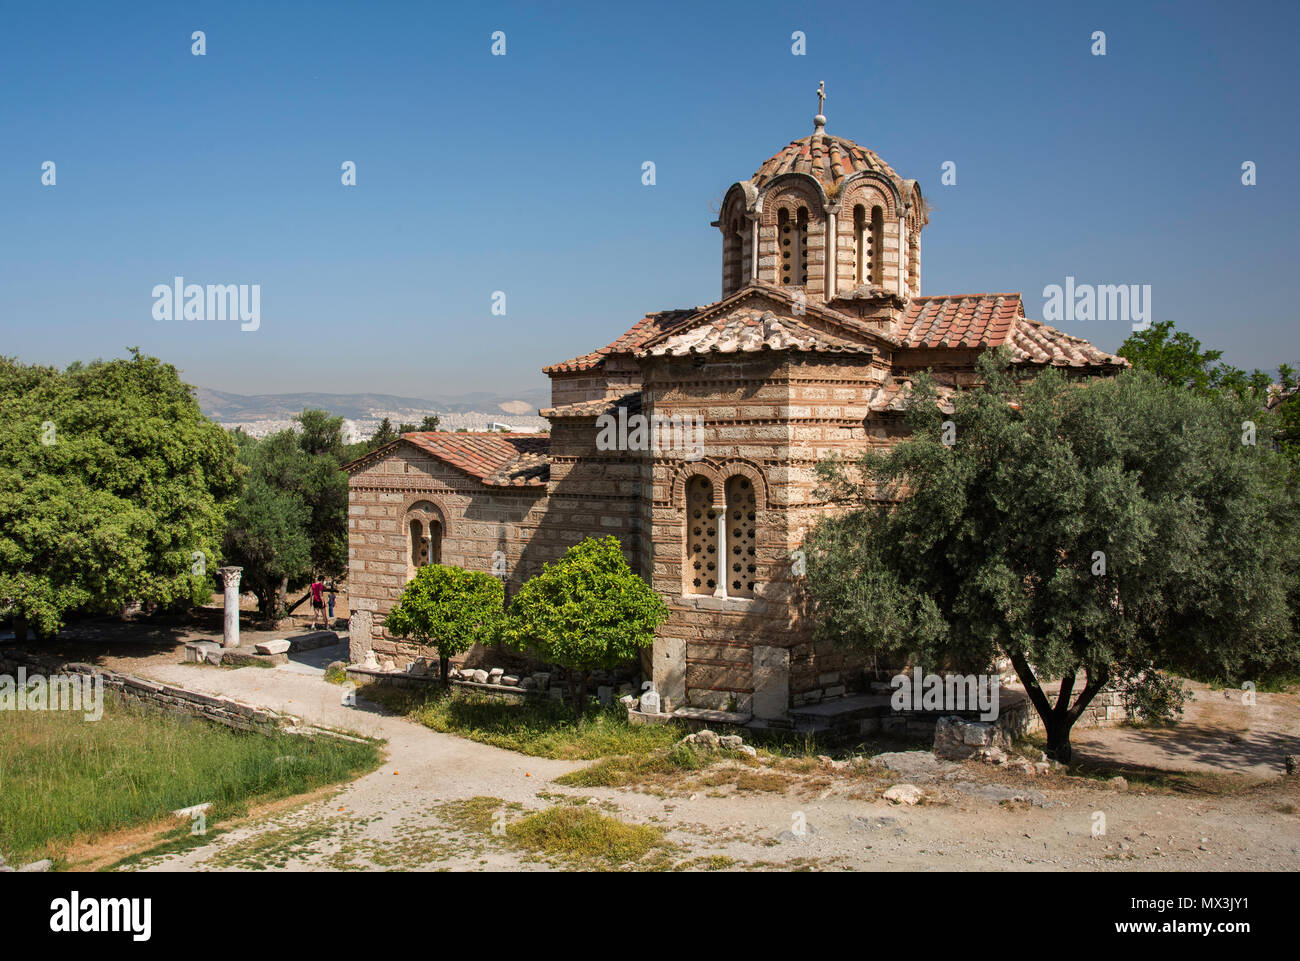 La Chiesa dei Santi Apostoli, noto anche come santi apostoli di Solaki, è situato nell'Antica Agorà di Atene, Grecia, accanto a Stoa di Attalos Foto Stock